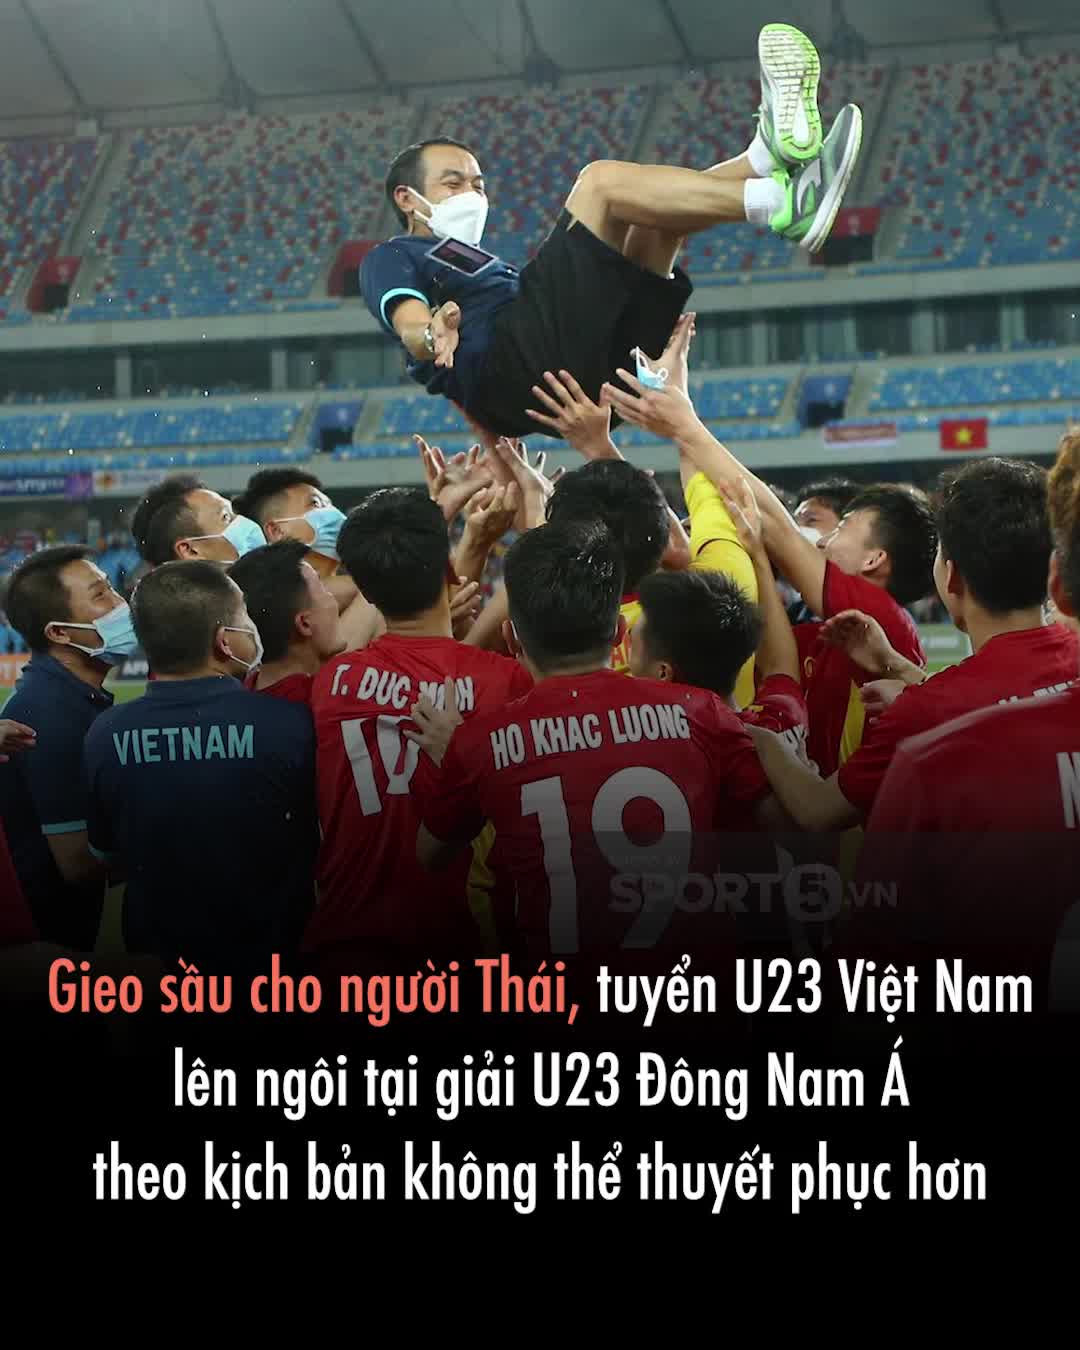 Gieo sầu cho người Thái, tuyển U23 Việt Nam lên ngôi tại giải U23 Đông Nam Á theo kịch bản không thể thuyết phục hơn